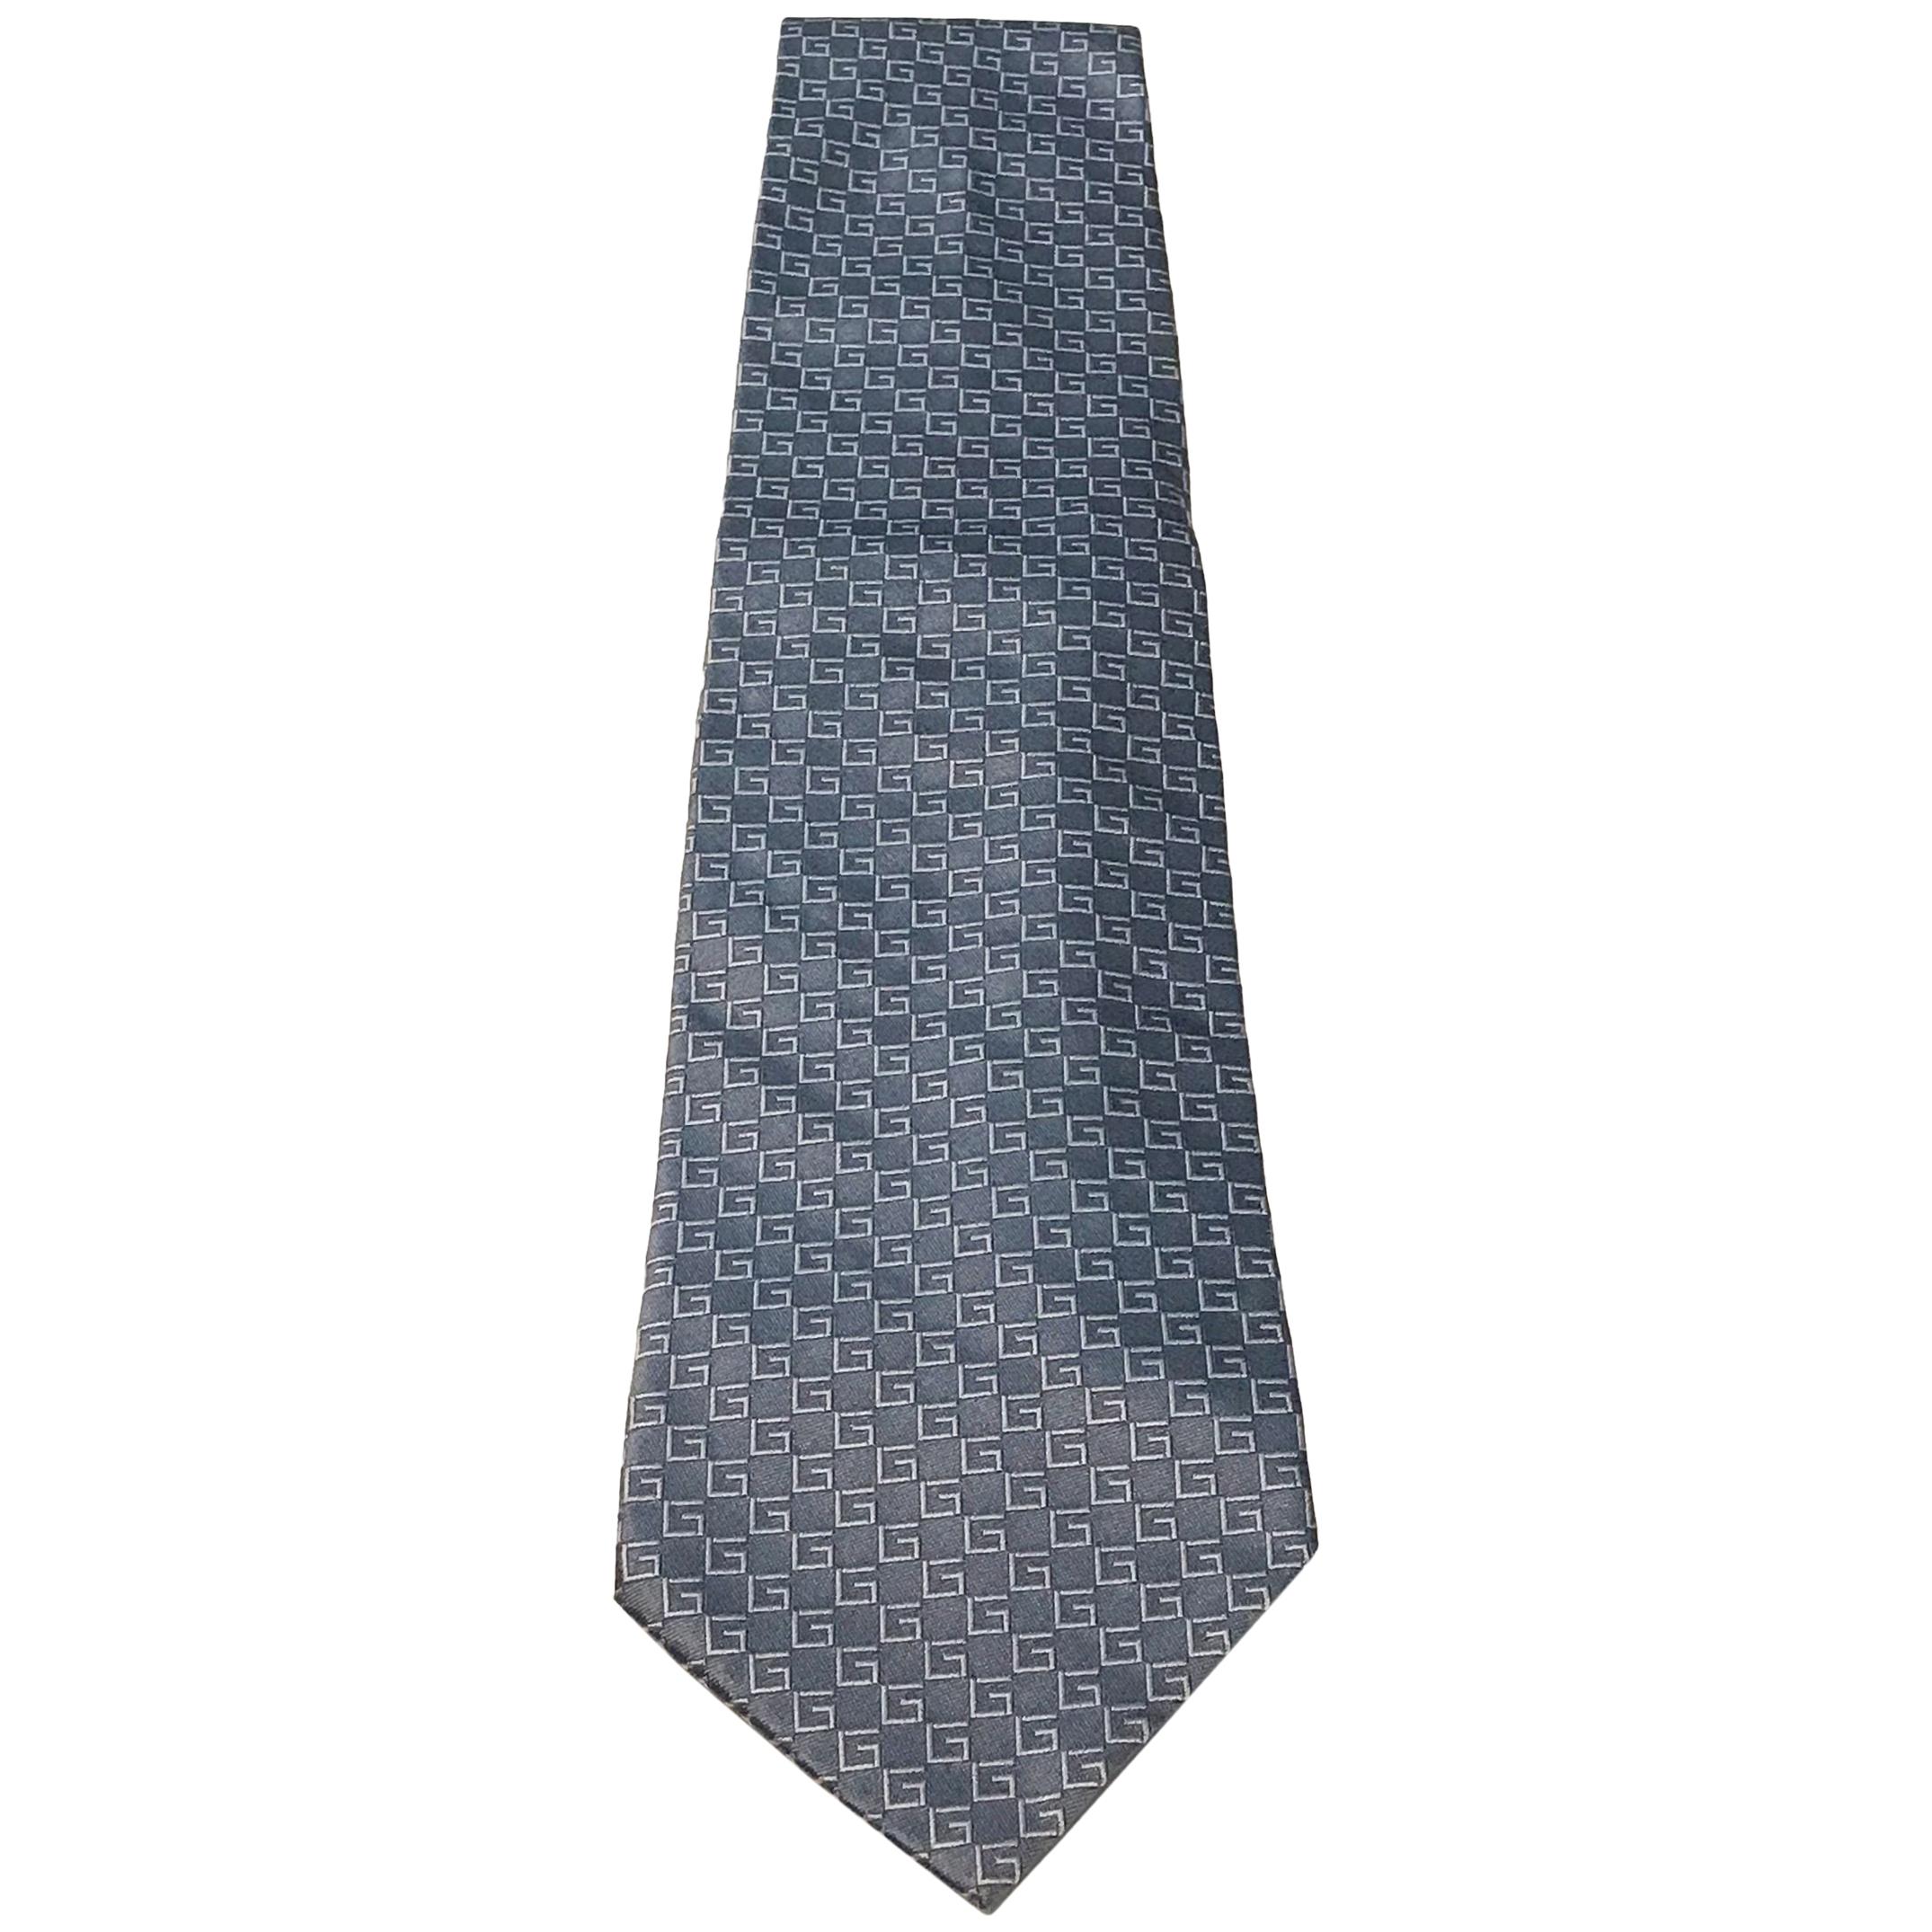 Gucci silver tie. For Sale